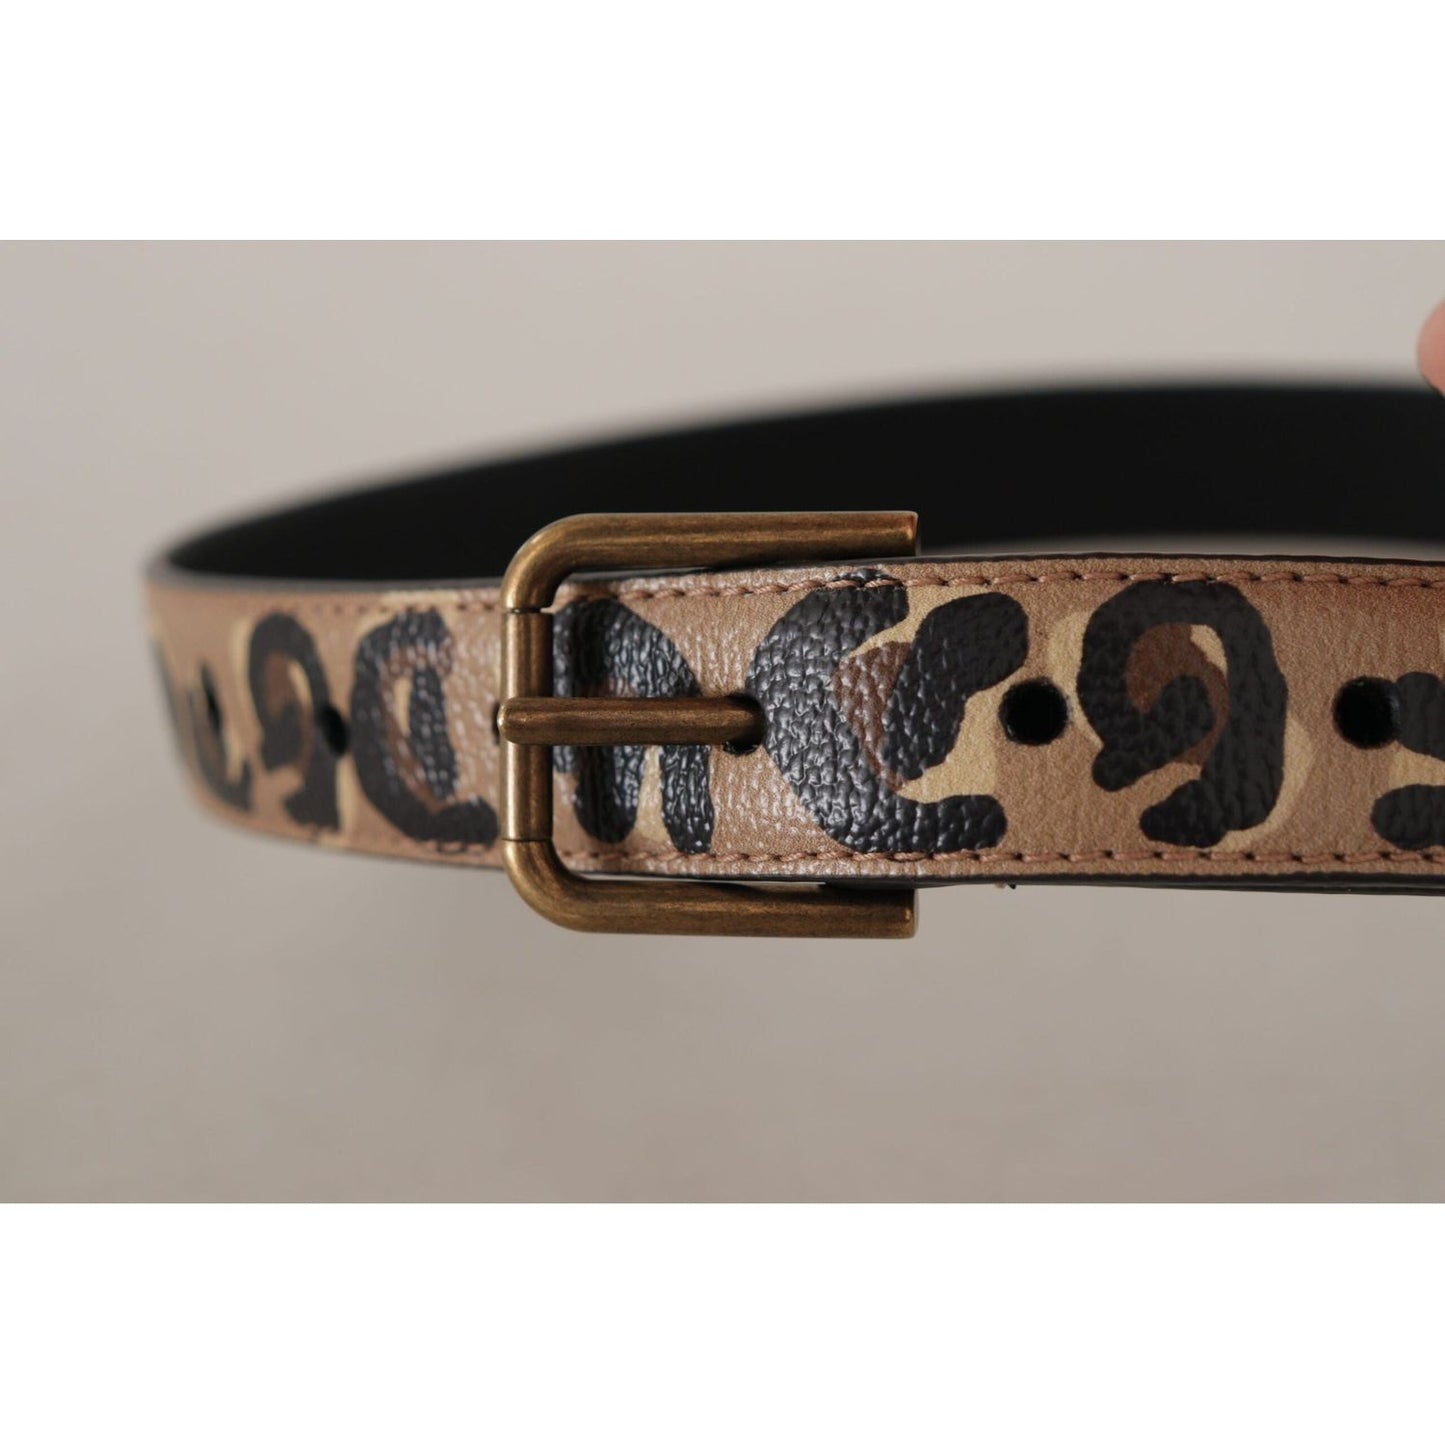 Dolce & Gabbana Elegant Leather Engraved Buckle Belt brown-leopard-print-vintage-metal-waist-buckle-belt IMG_9123-scaled-2d847d28-9d2.jpg